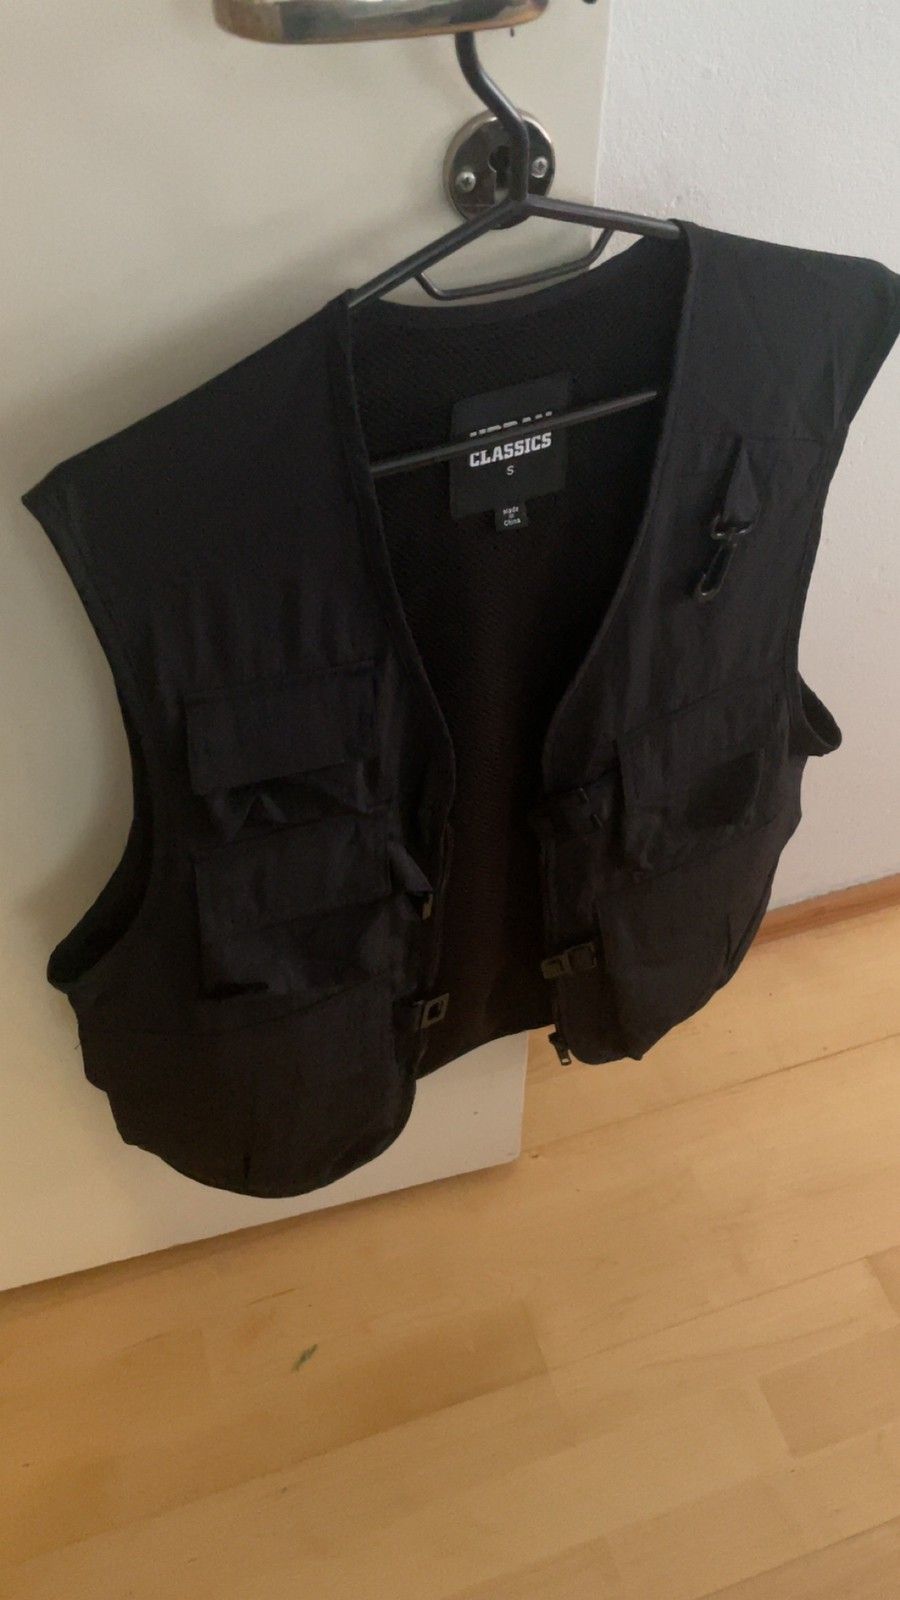 Urban Classics Tactical Vest